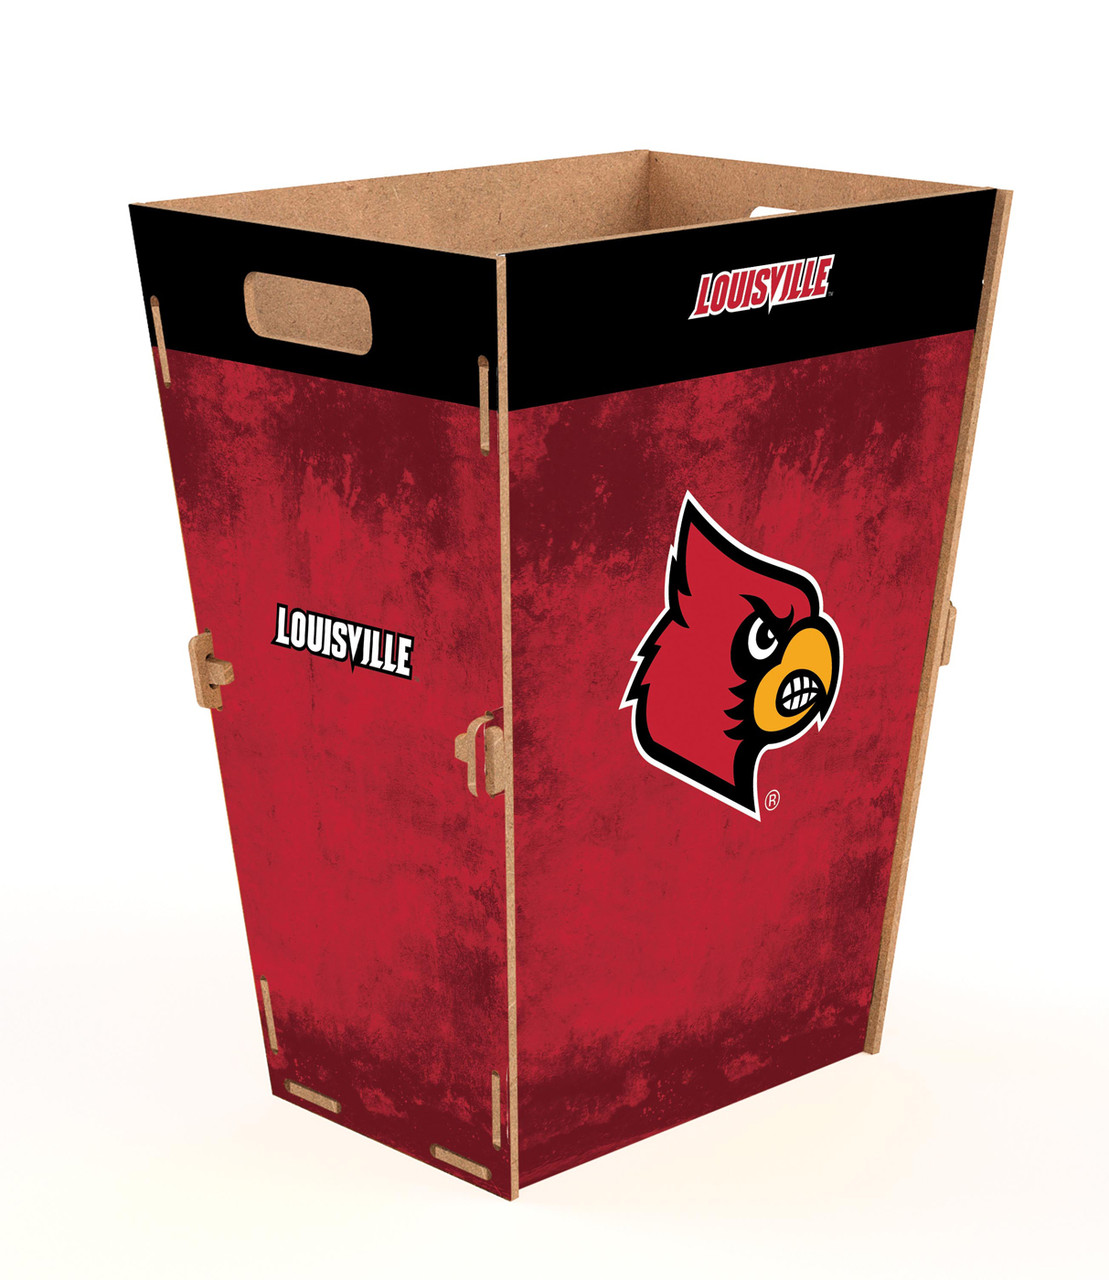 University of Louisville Trash Can - SWIT Sports